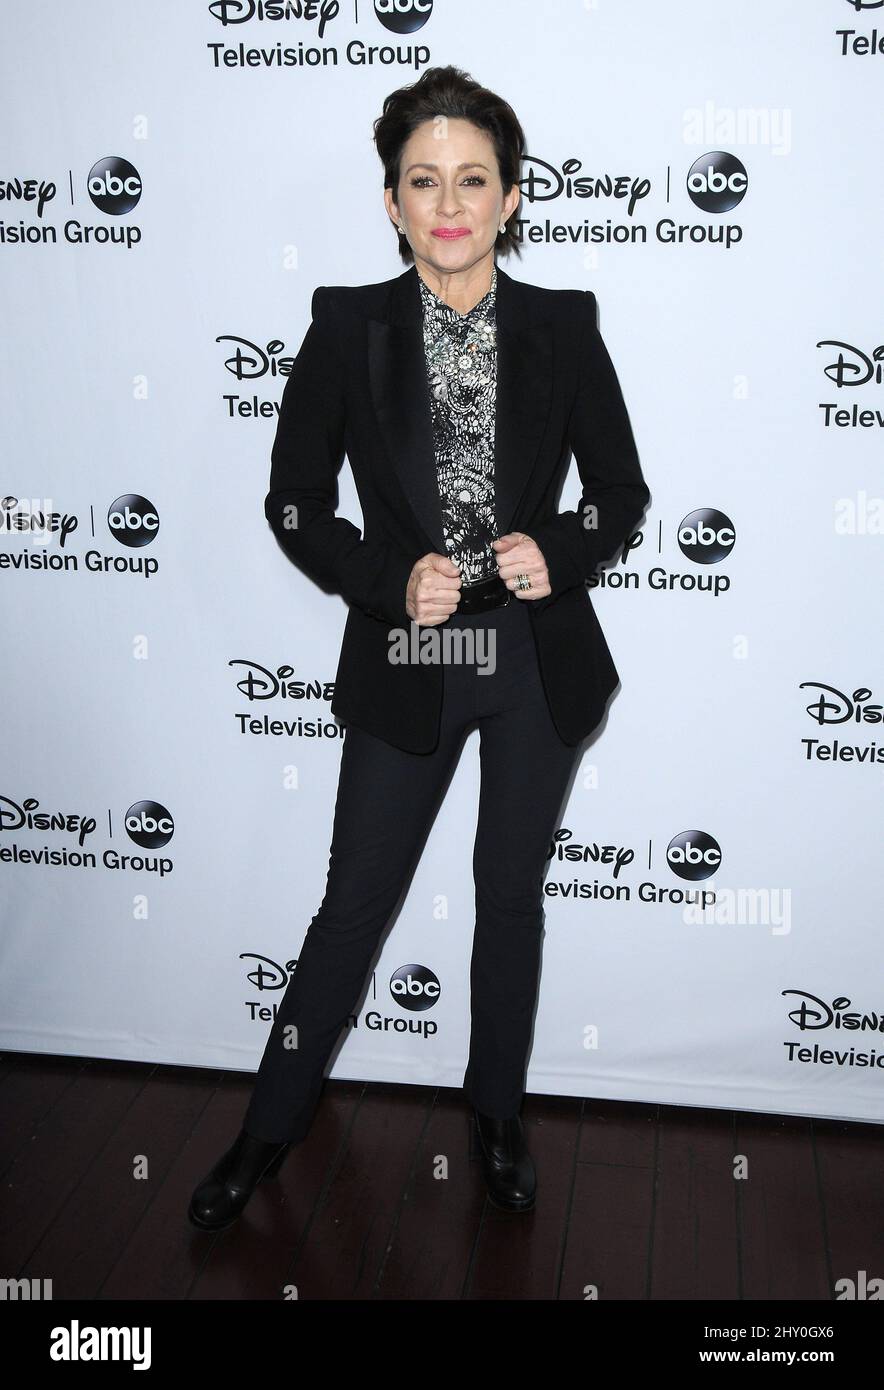 Patricia Heaton Llegando para el Grupo de Televisión ABC de Disney - Tour de Invierno de la TCA 2013 realizado en el Hotel Langham Huntington, Pasadena, California. Foto de stock